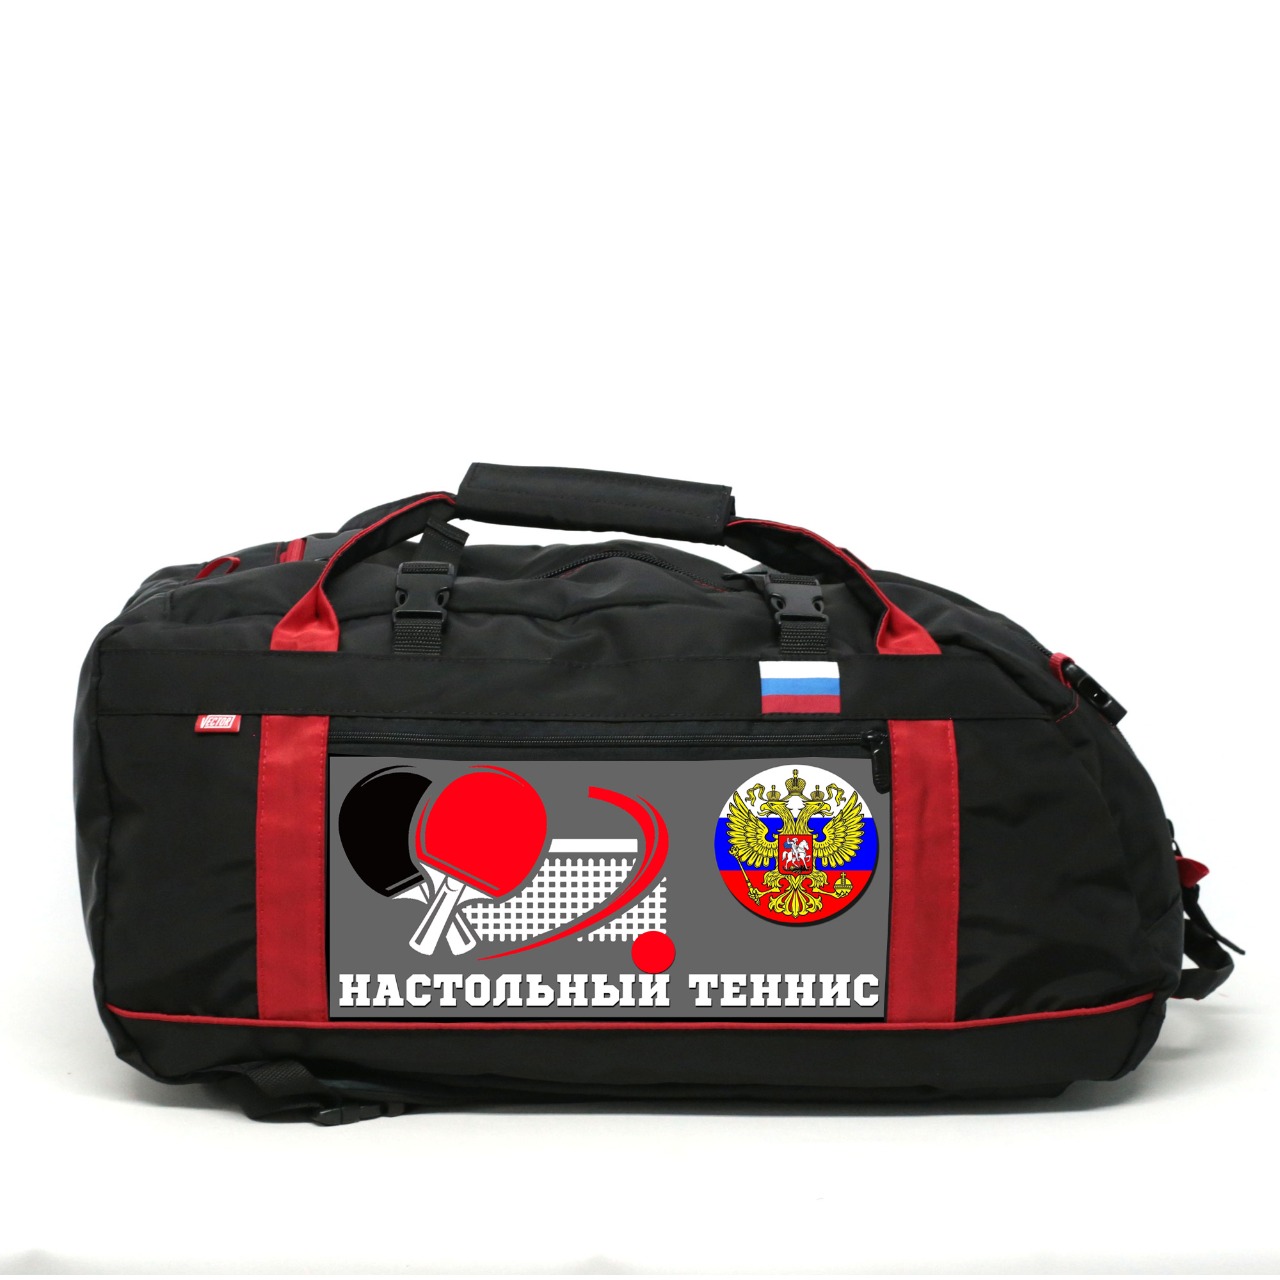 Спортивная сумка Спорт Сибирь Настольный теннис 35 литров черная